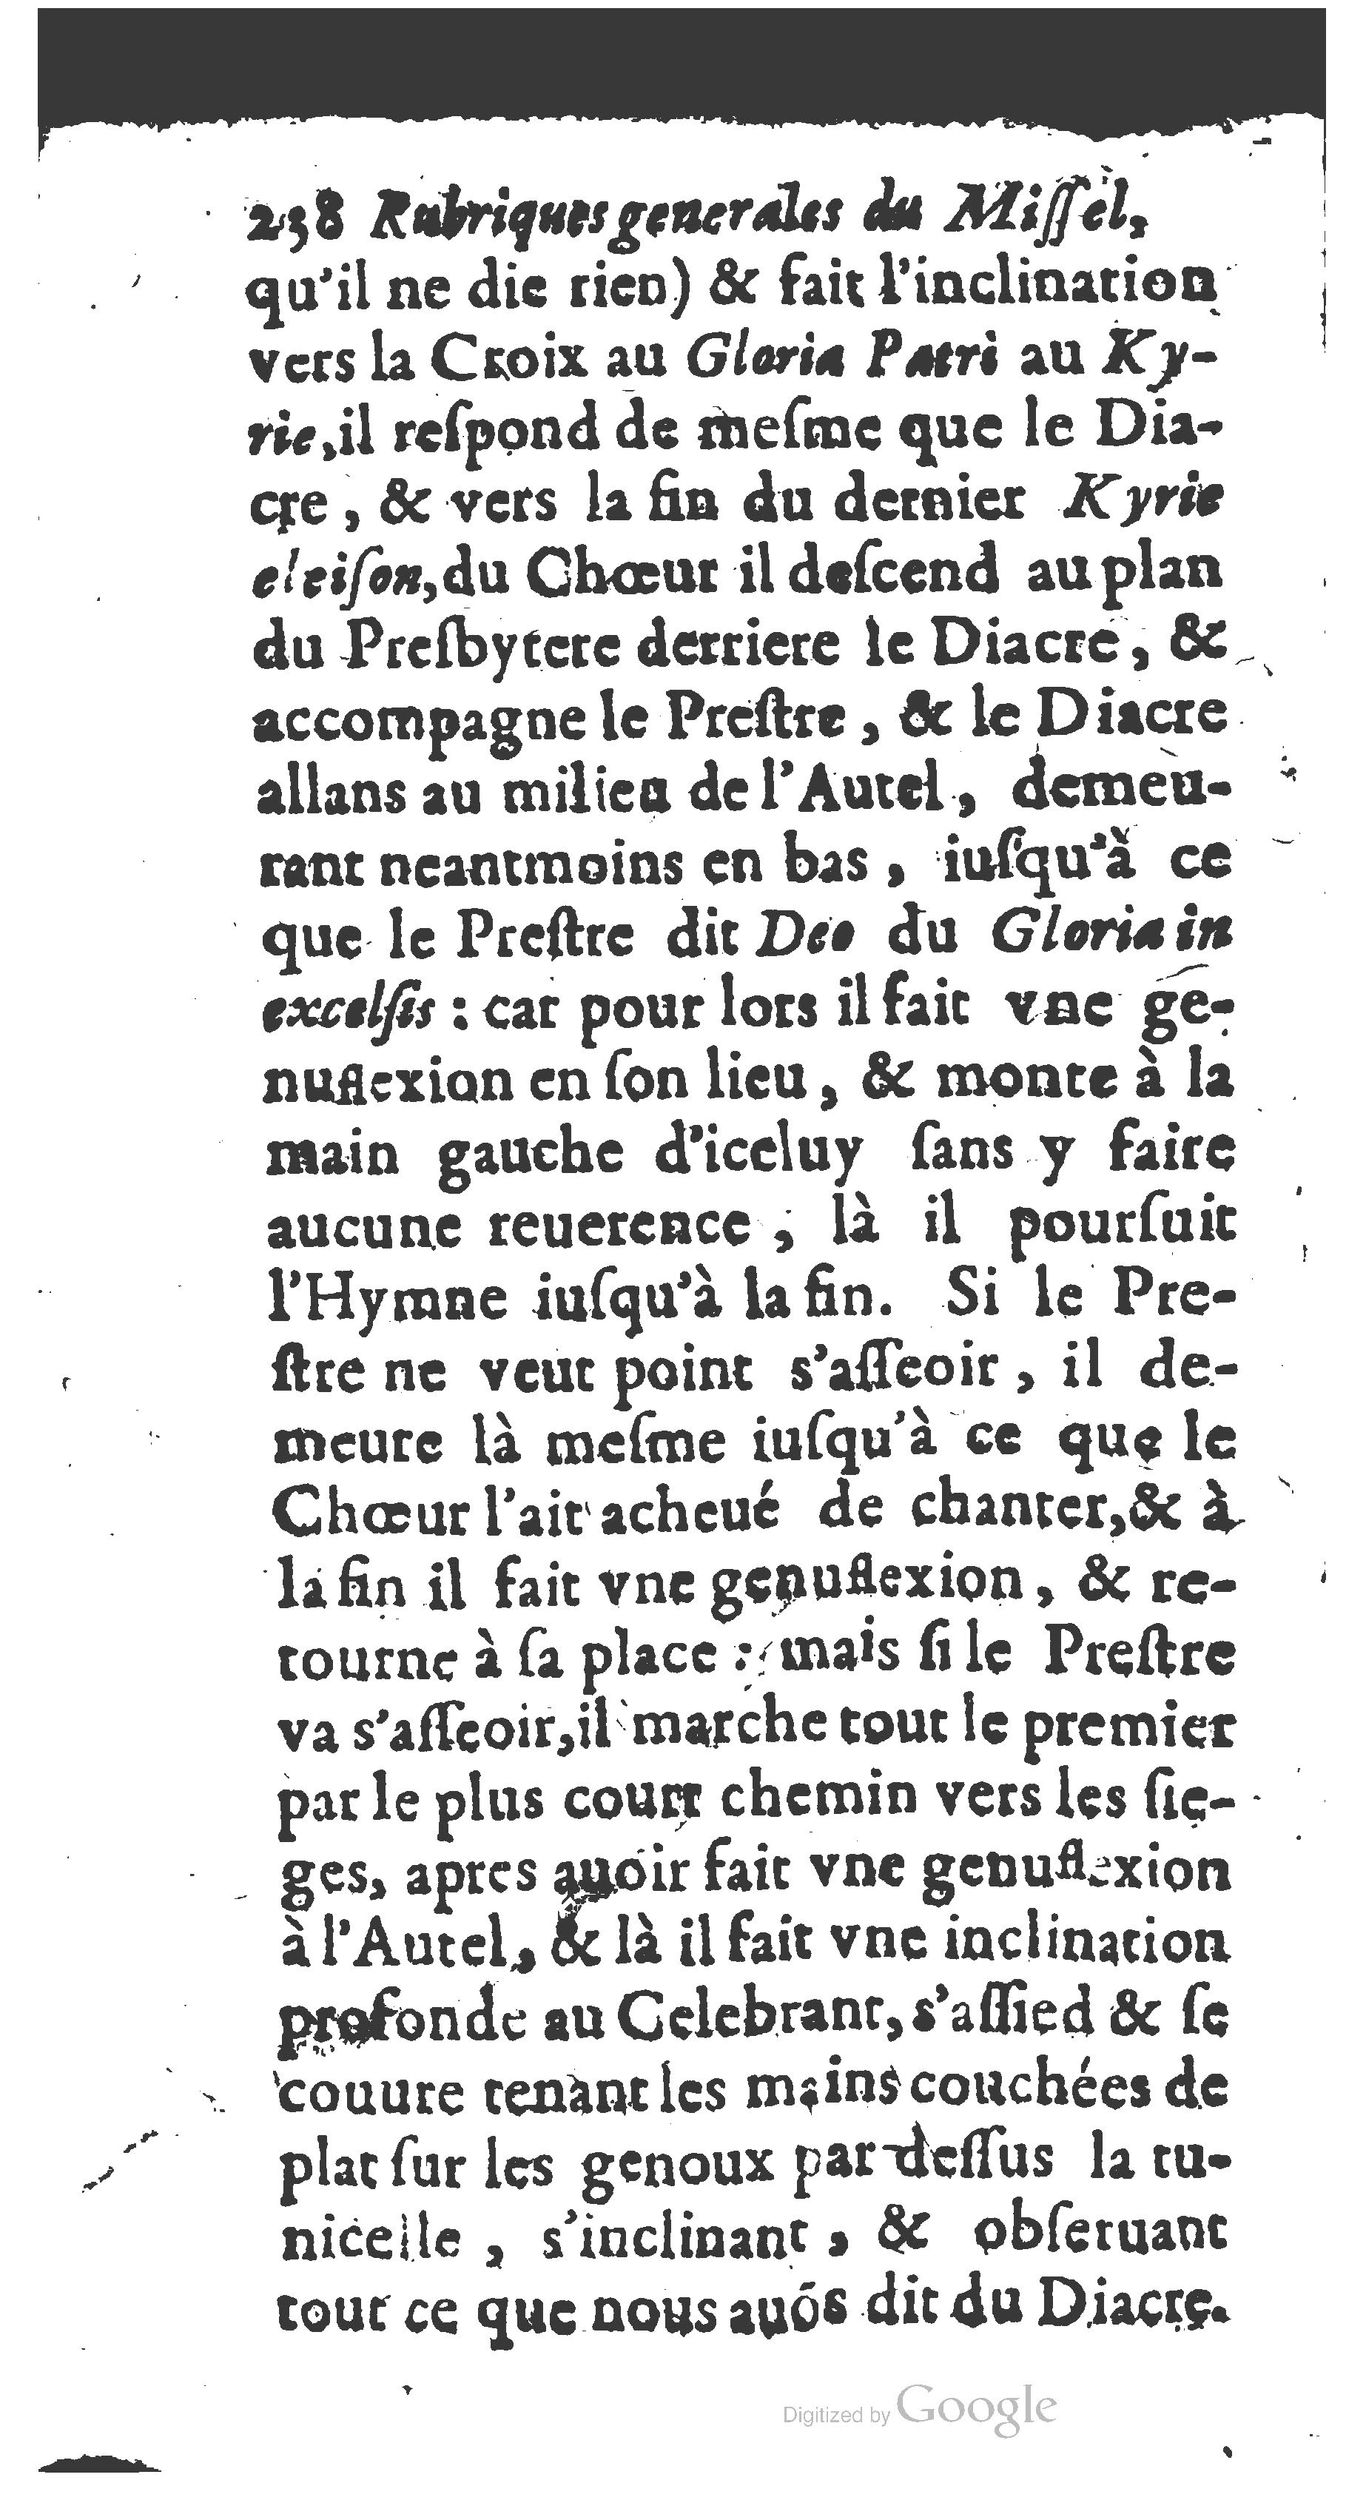 1651 Abrégé du trésor des cérémonies ecclésiastiques Guillermet_BM Lyon_Page_257.jpg